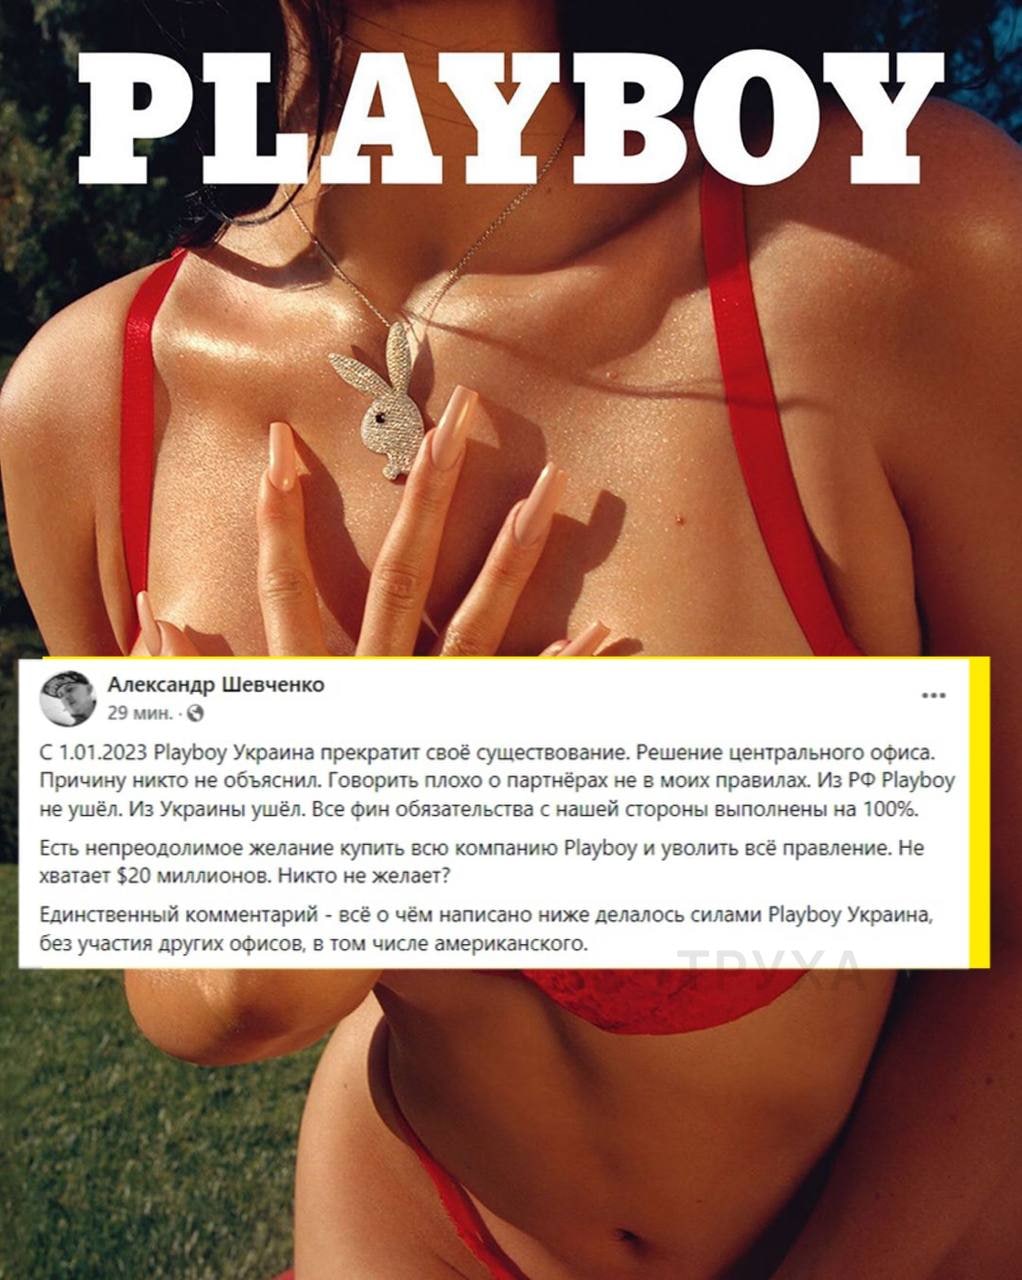 Playboy Украина с 1 января 2023 покидает украинский рынок, – совладелец журнала Александр Шевченко